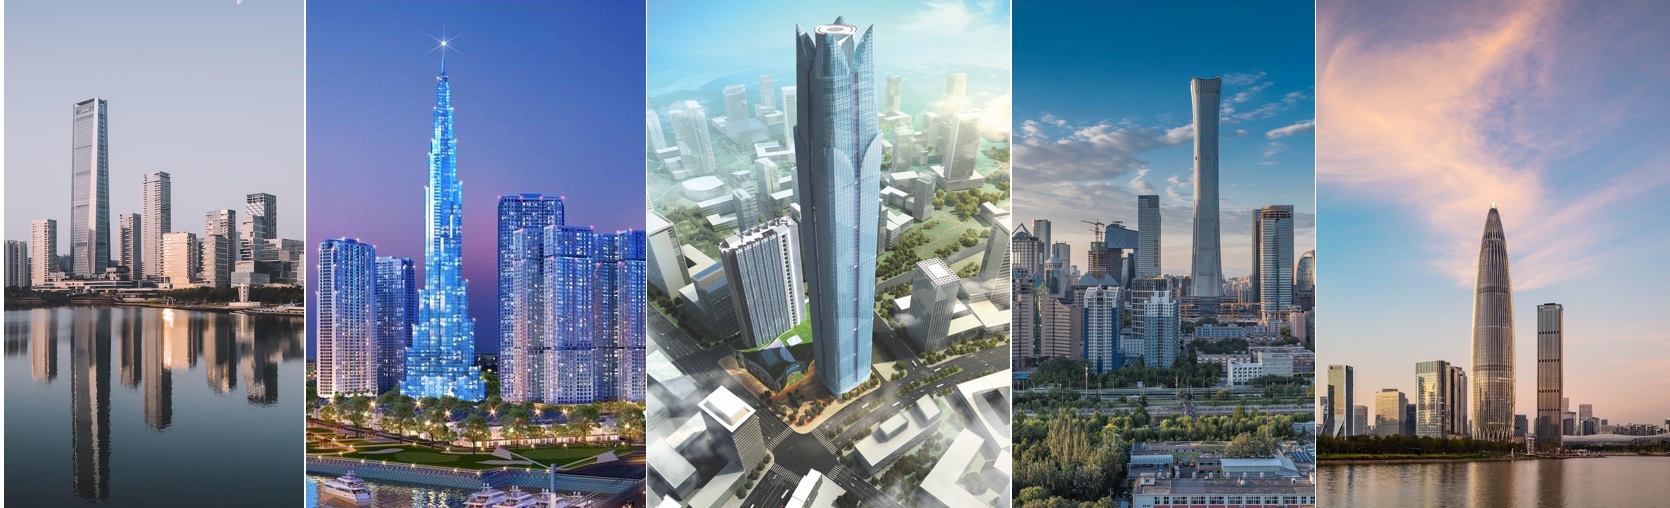 En 2018, on compte 1.478 gratte-ciel de plus de 200 mètres dans le monde, une hausse de 141 % par rapport à 2010. © C.D., CTBUH